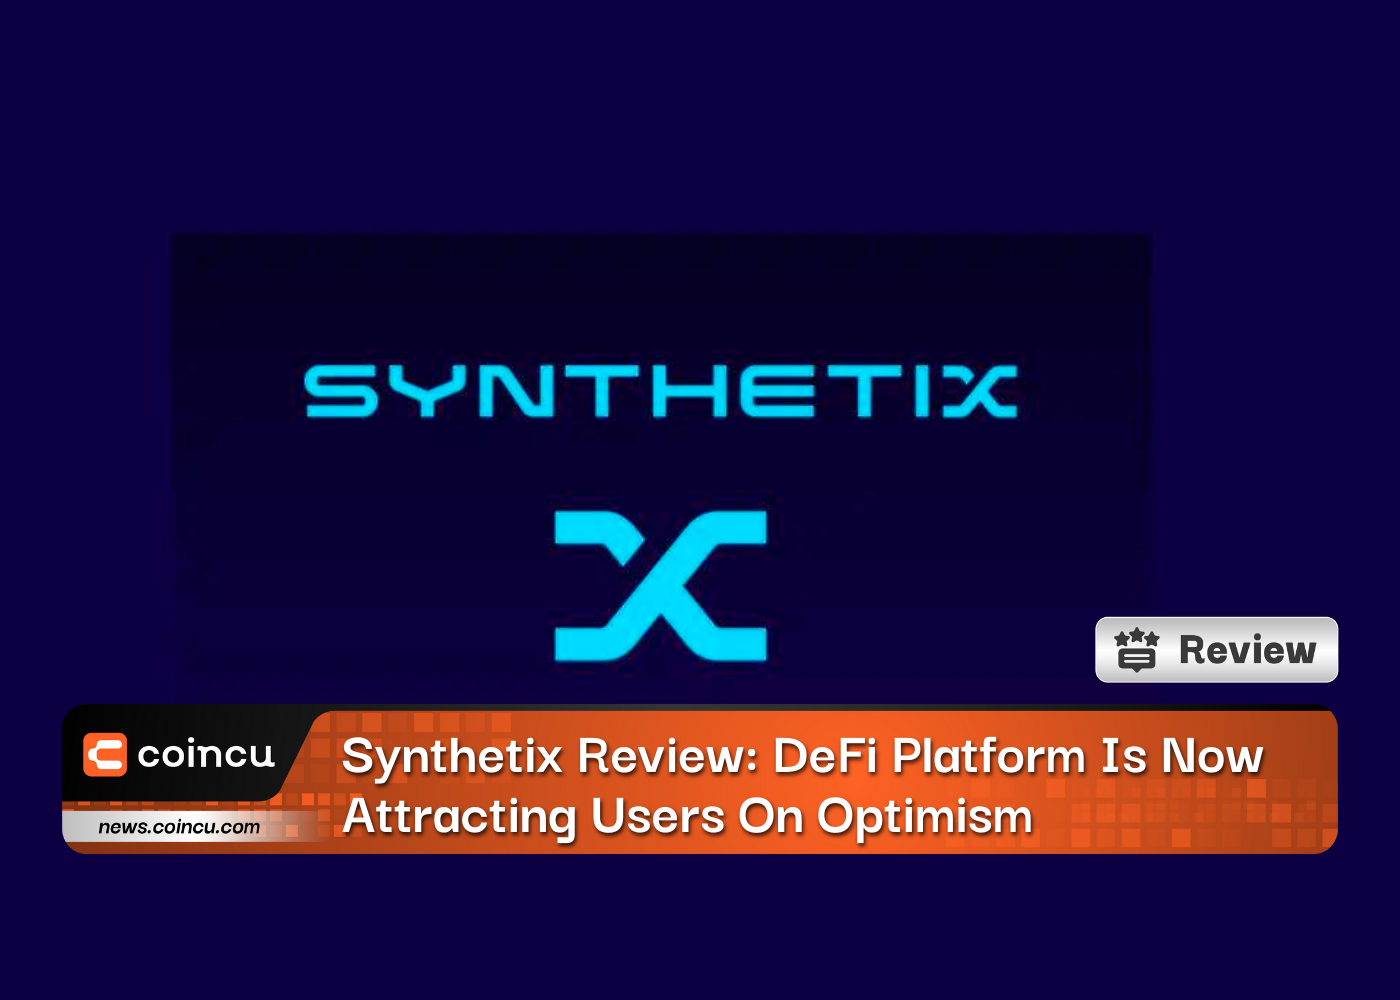 Synthetix レビュー: DeFi プラットフォームは楽観的な見方でユーザーを魅了しています